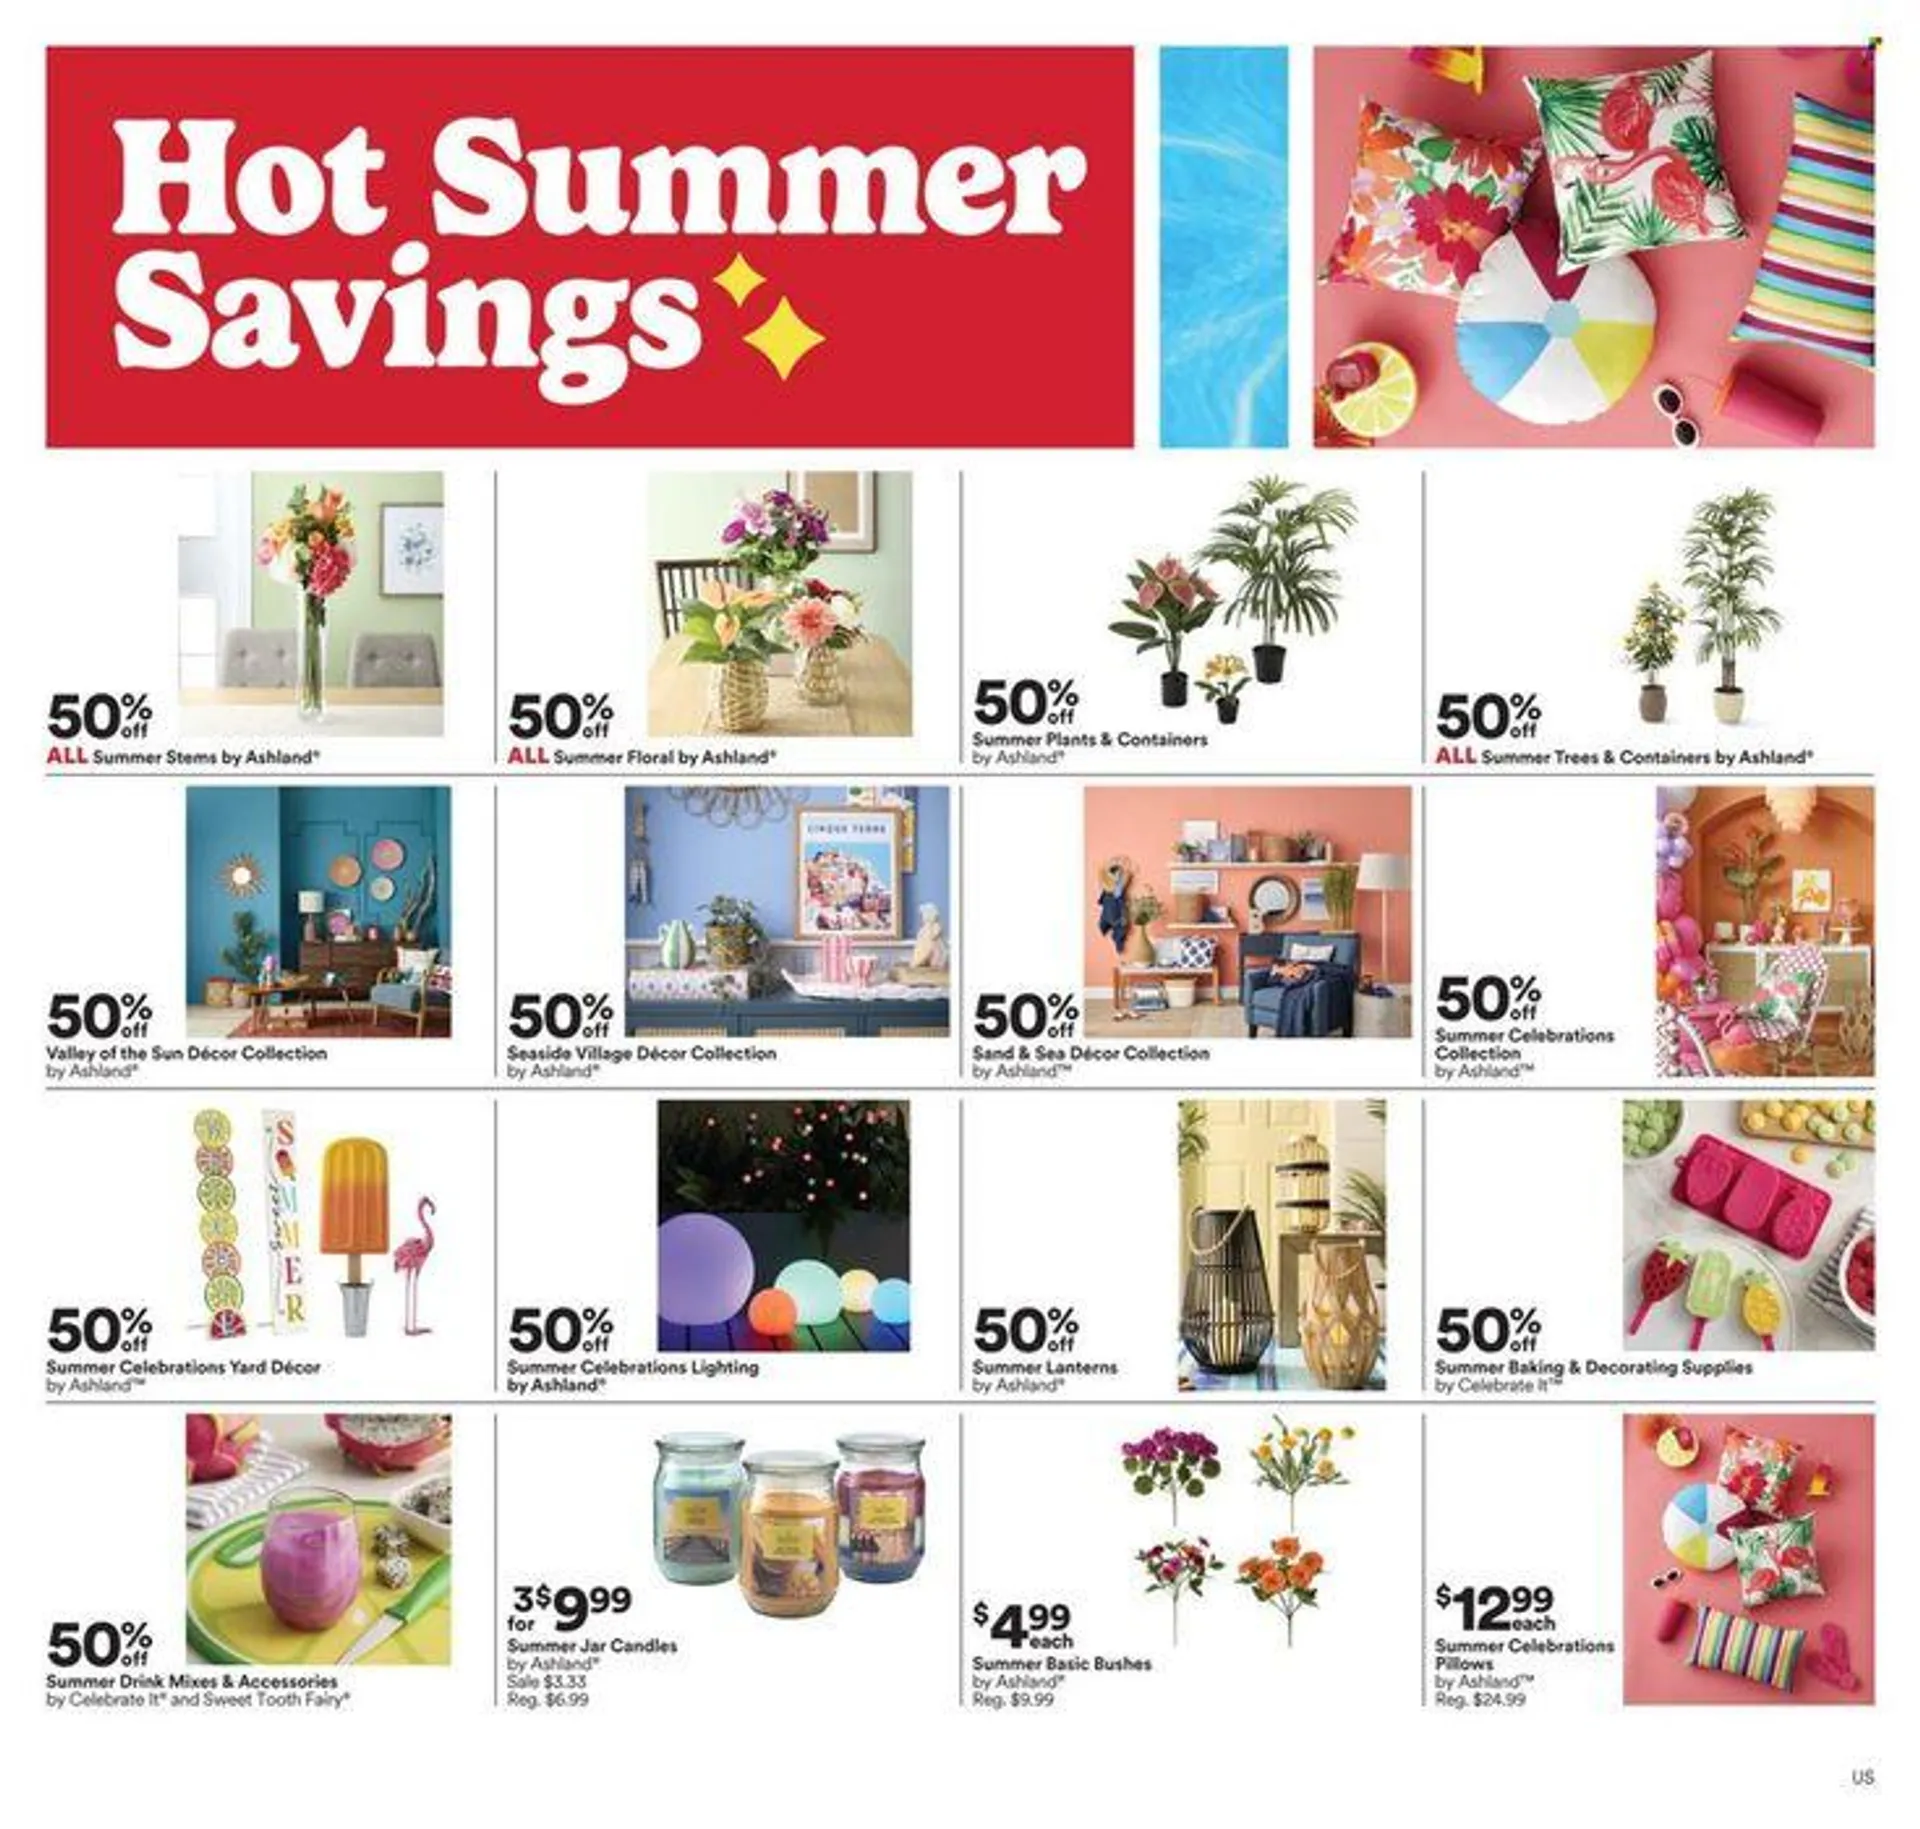 Hot Summer Savings - 1